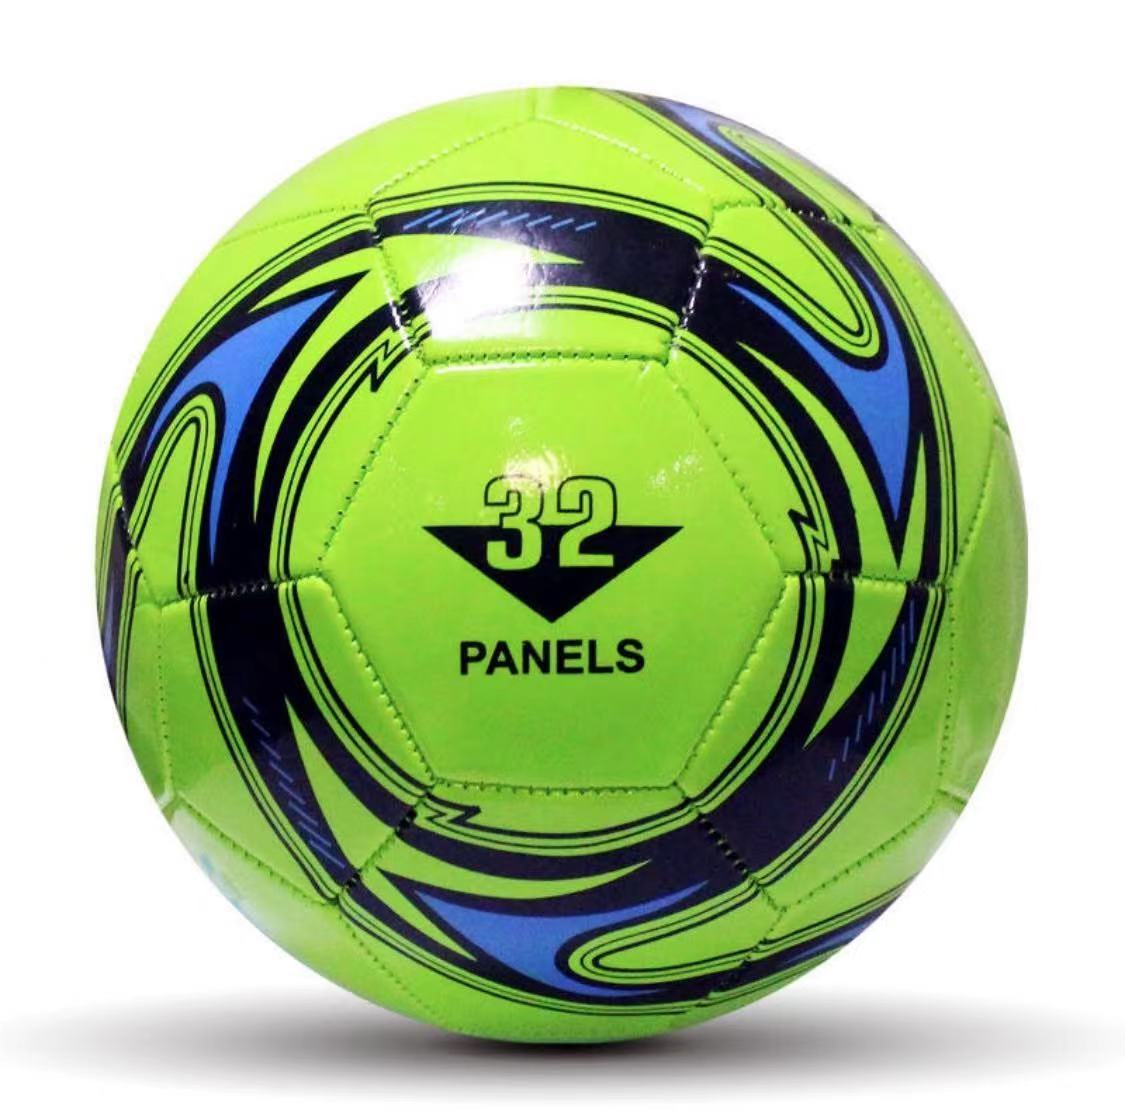 ลูกฟุตบอล เบอร์5 Football Soccer Ball-Size5 คุณภาพสูง เต็มลมเรียบร้อย พร้อมใช้งาน